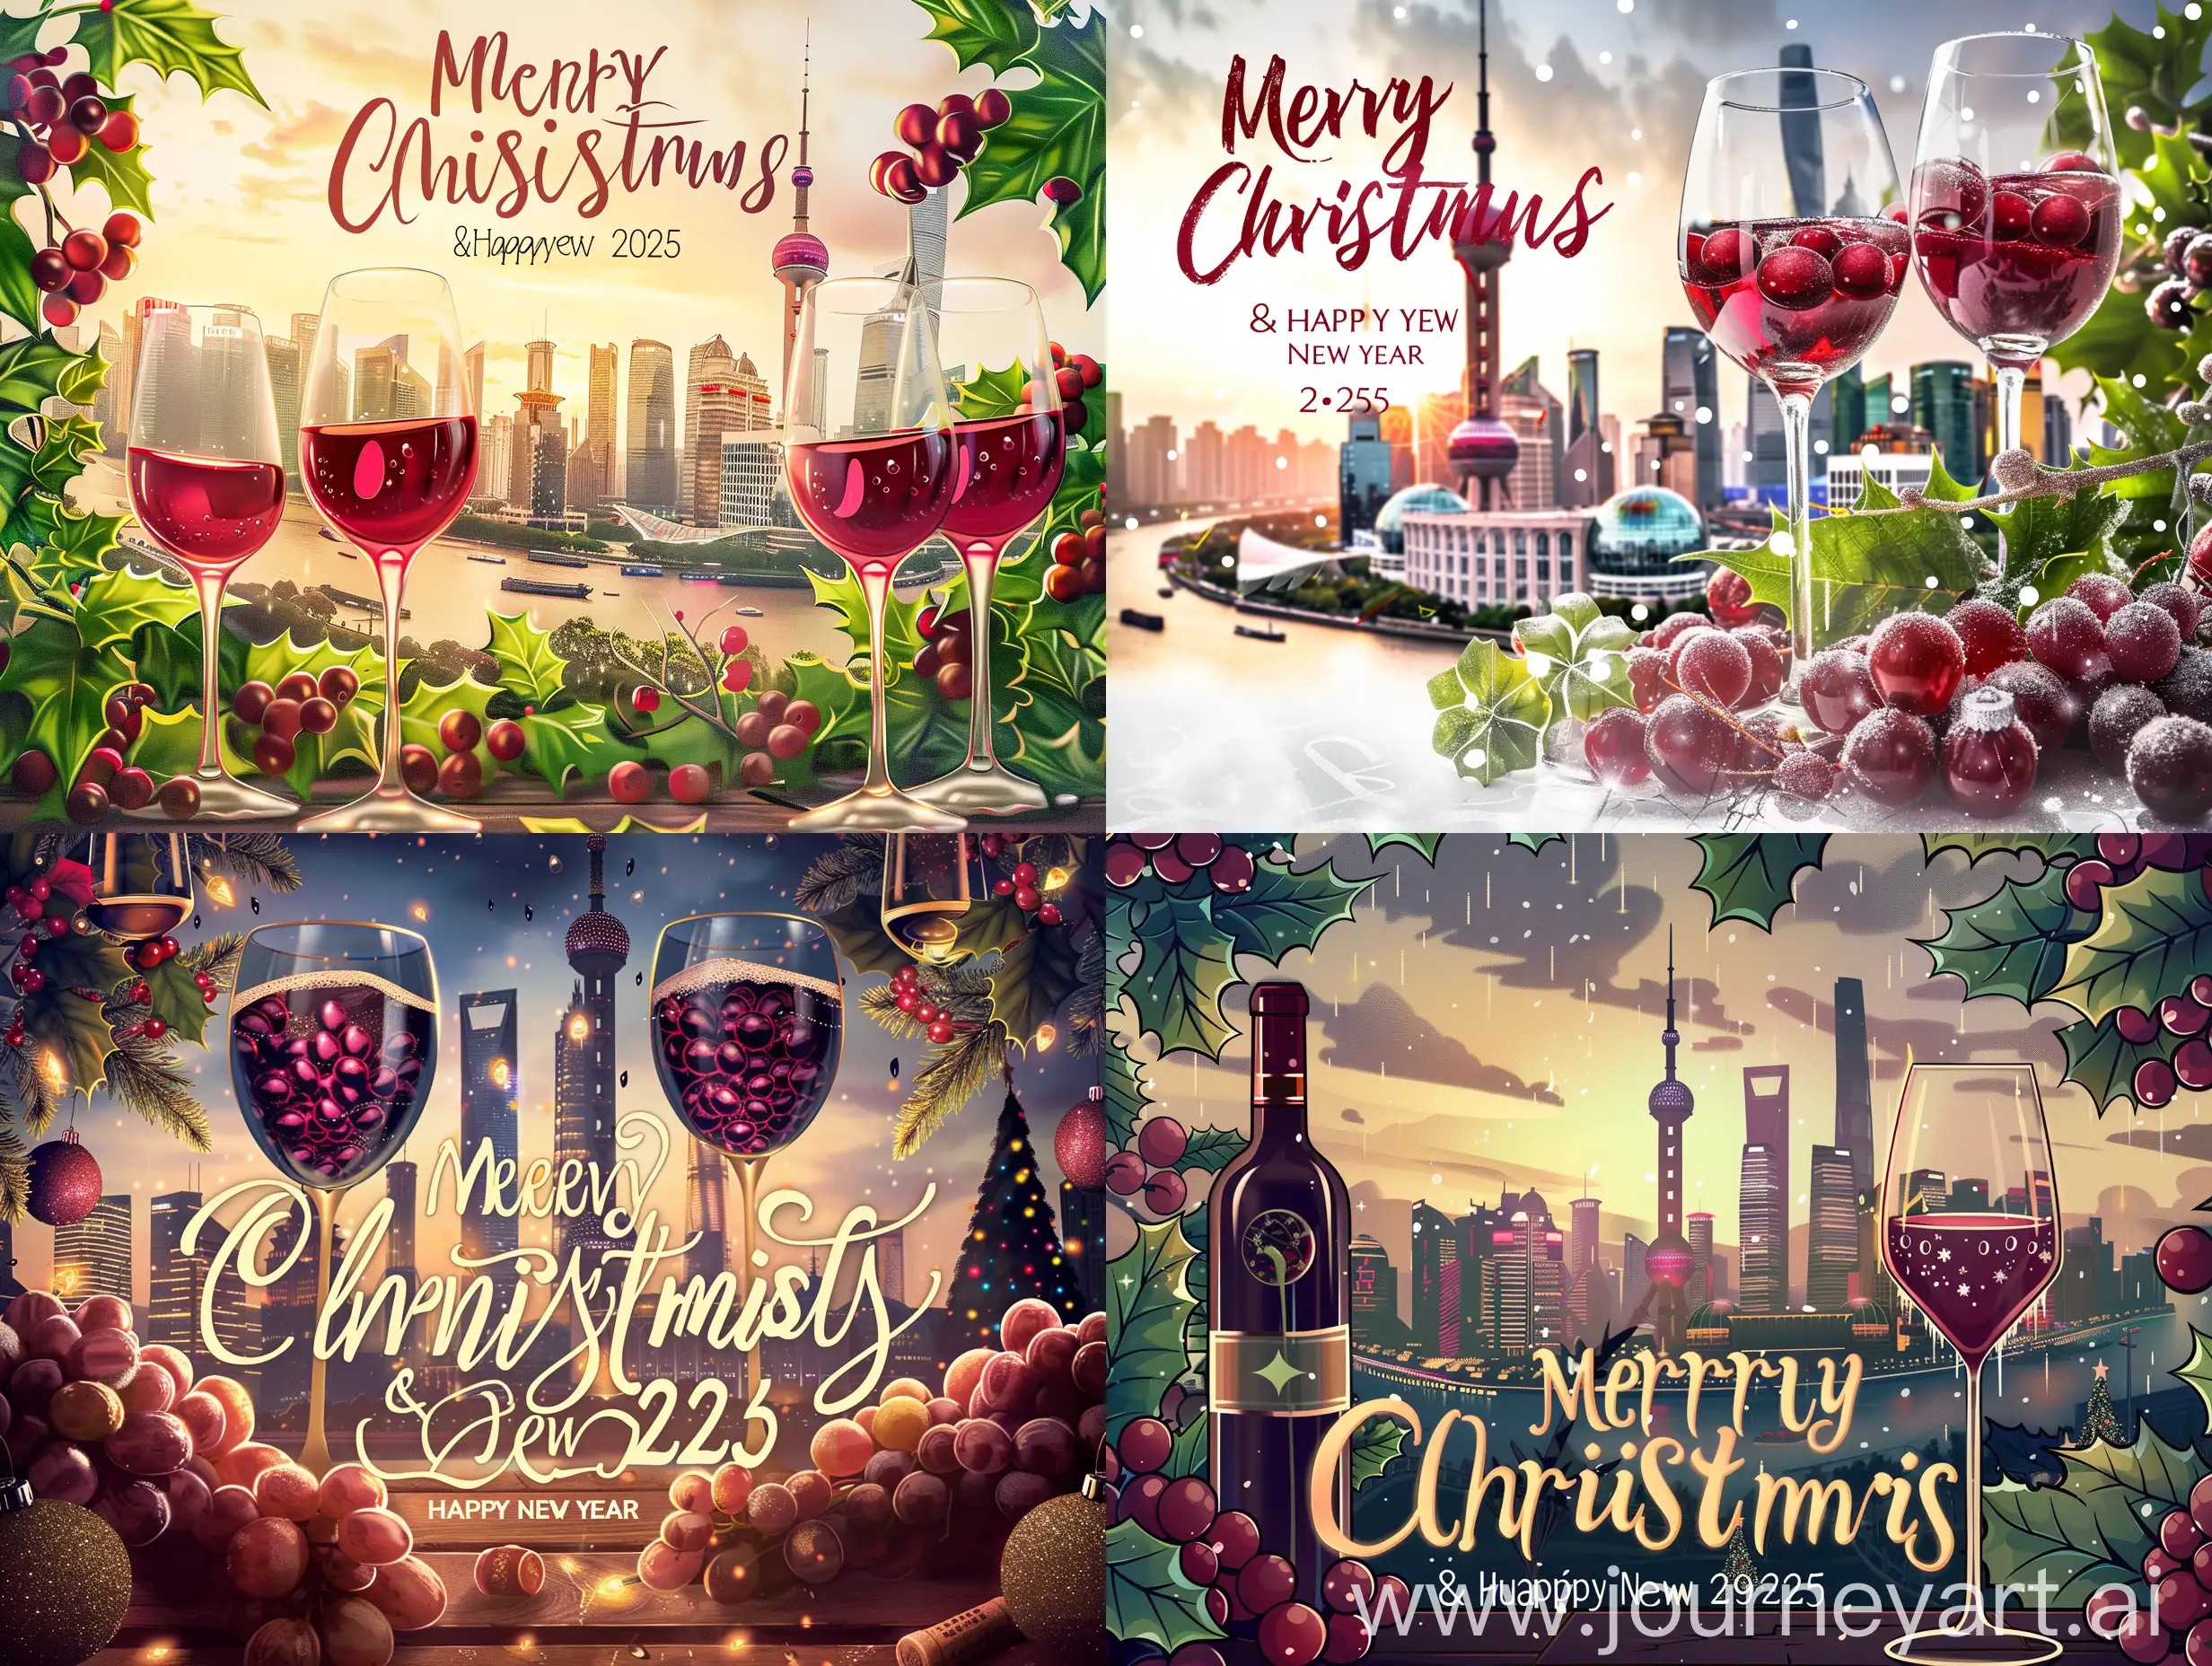 圣诞贺卡，上海陆家嘴做背景，要有葡萄酒和葡萄酒杯的元素，卡上需写：Merry Christmas &Happy New Year 2025